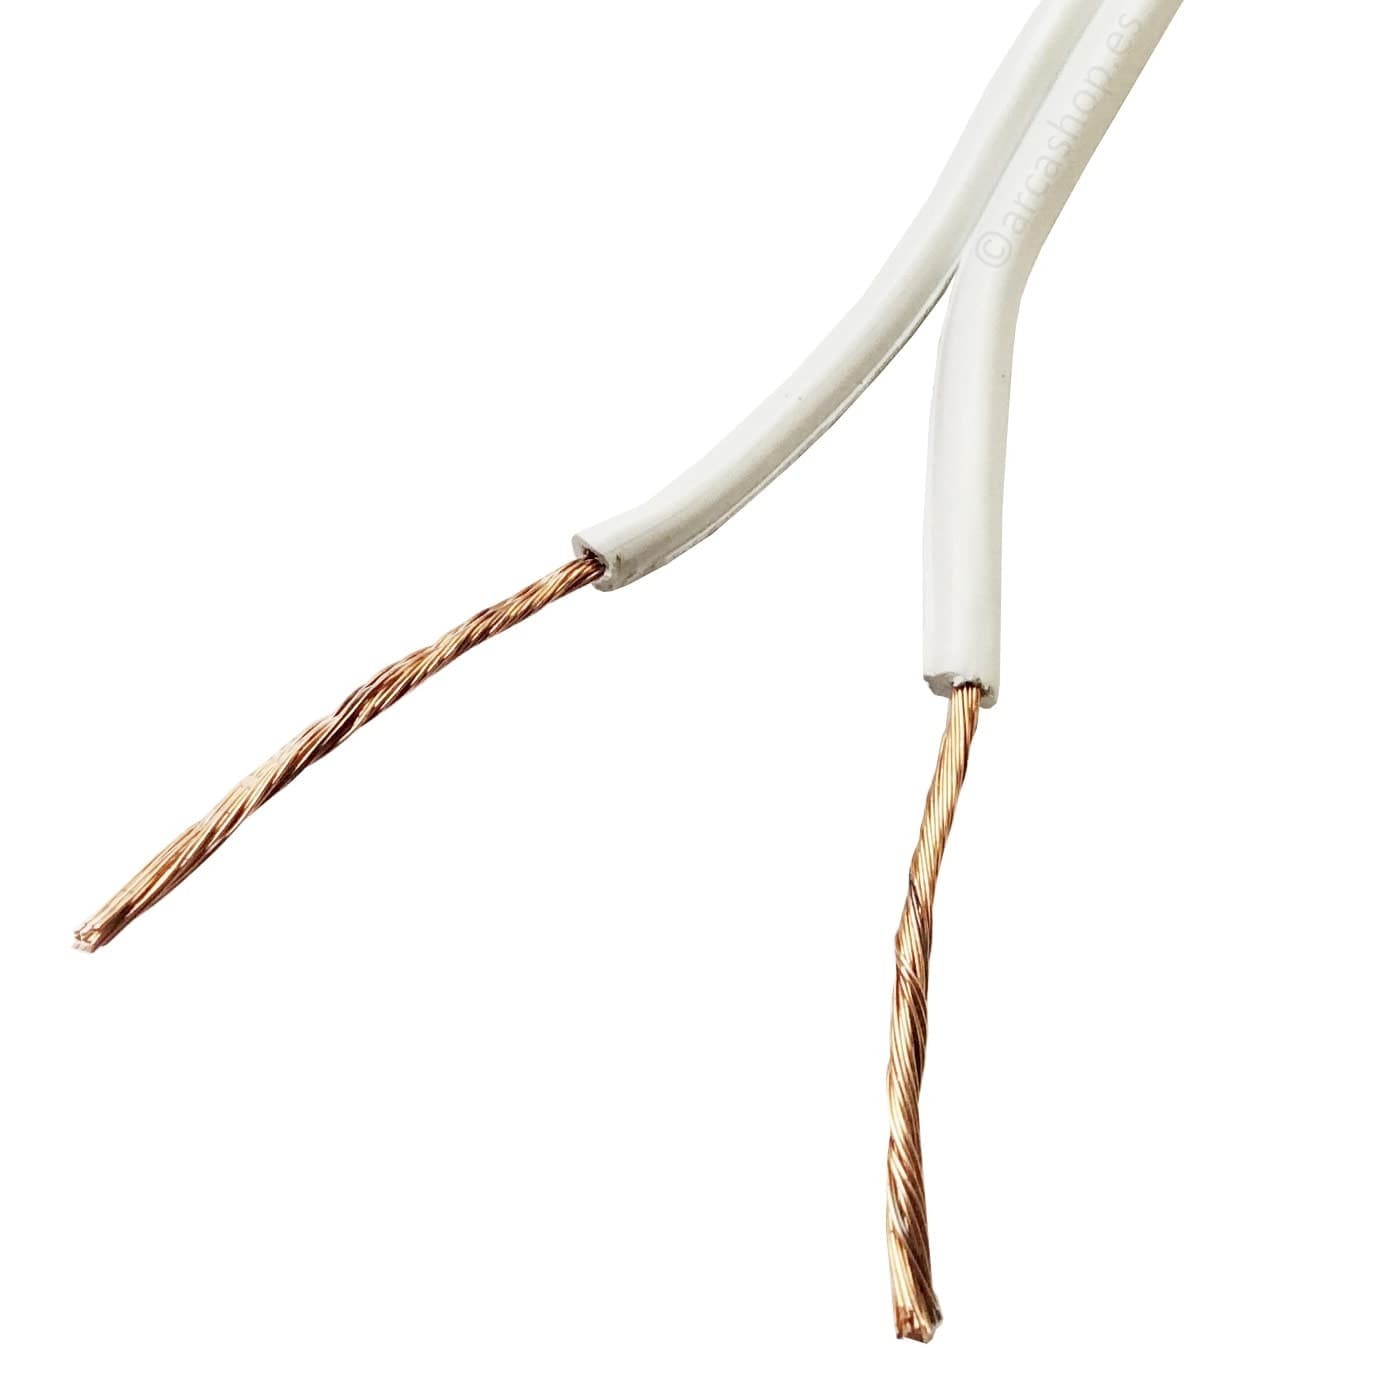 Cable electricidad Paralelo Blanco